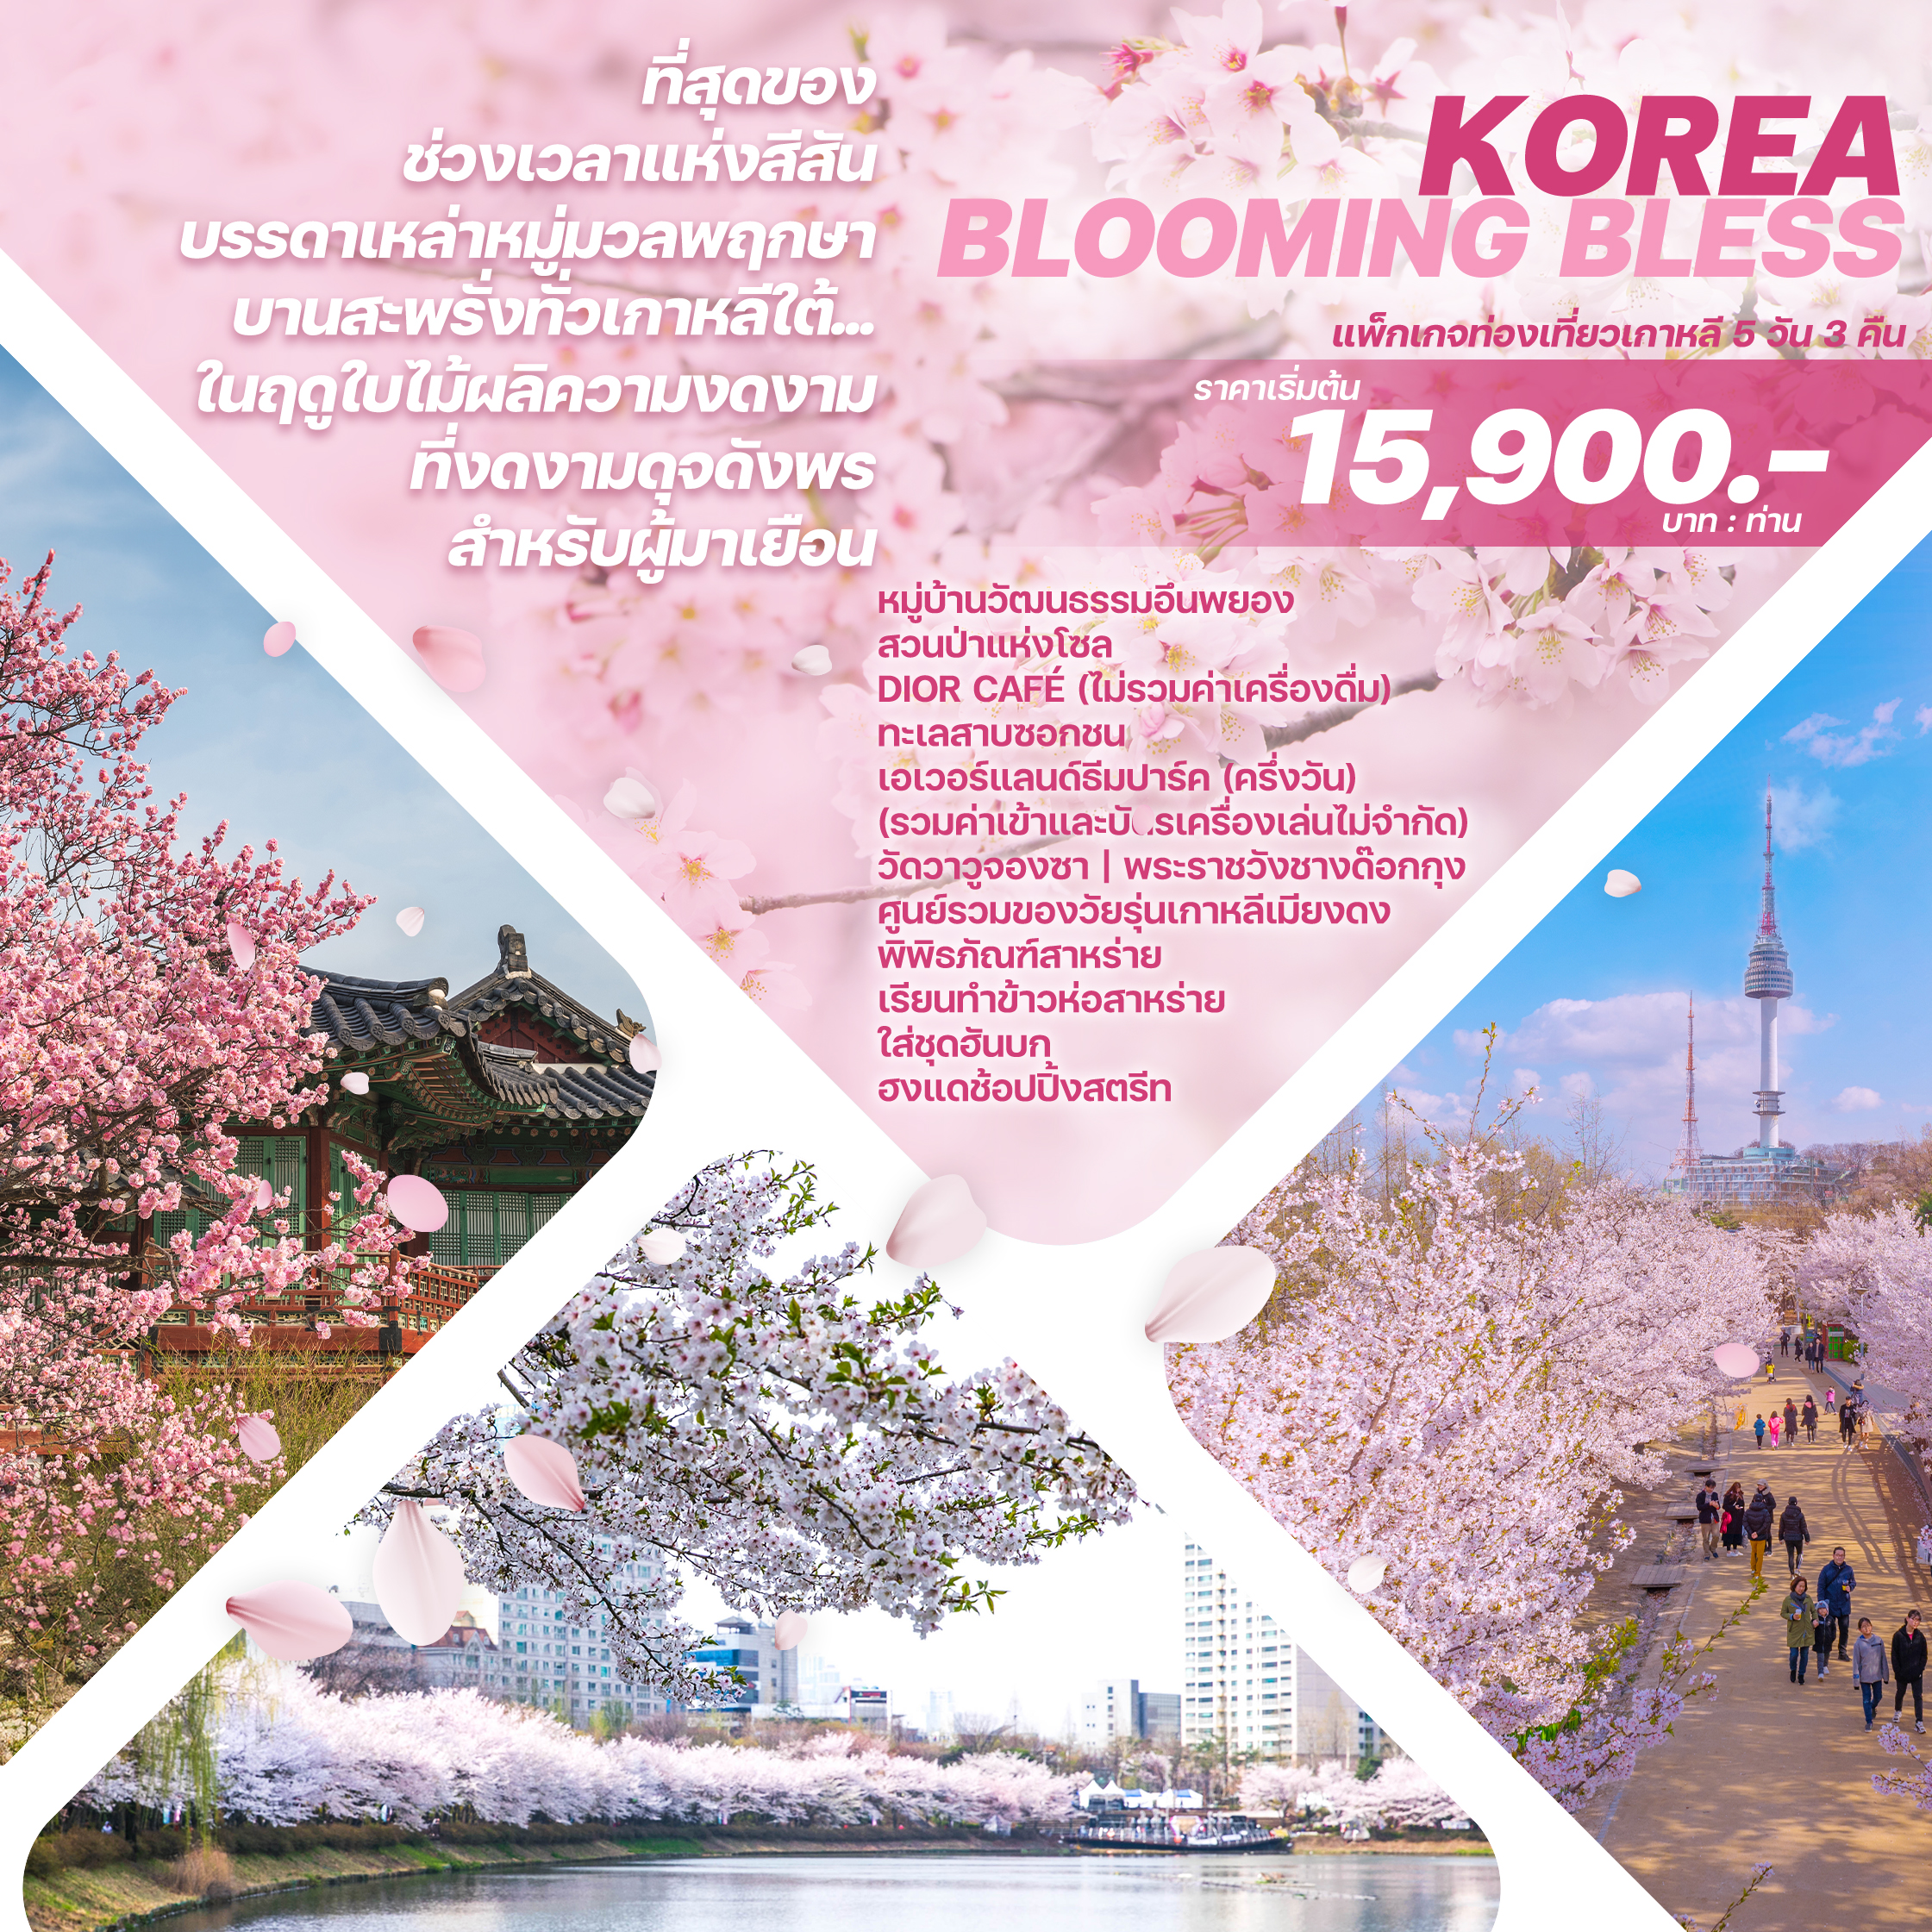 ทัวร์เกาหลี KOREA BLOOMING BLESS 5วัน 3คืน 7C / BX